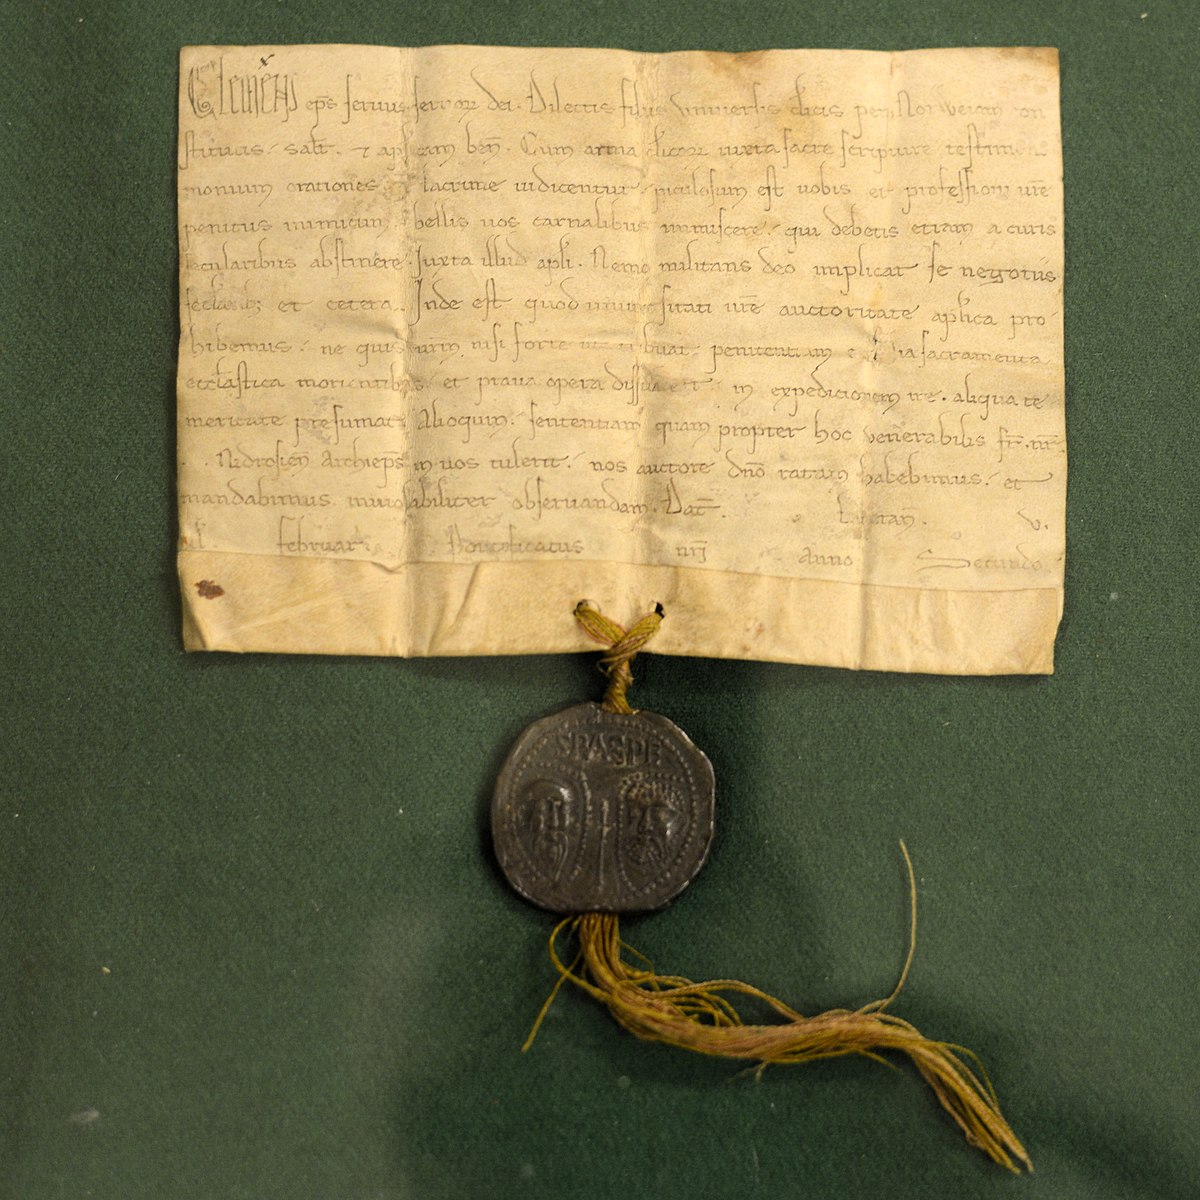 exempel på første társkereső brev intj entj társkereső